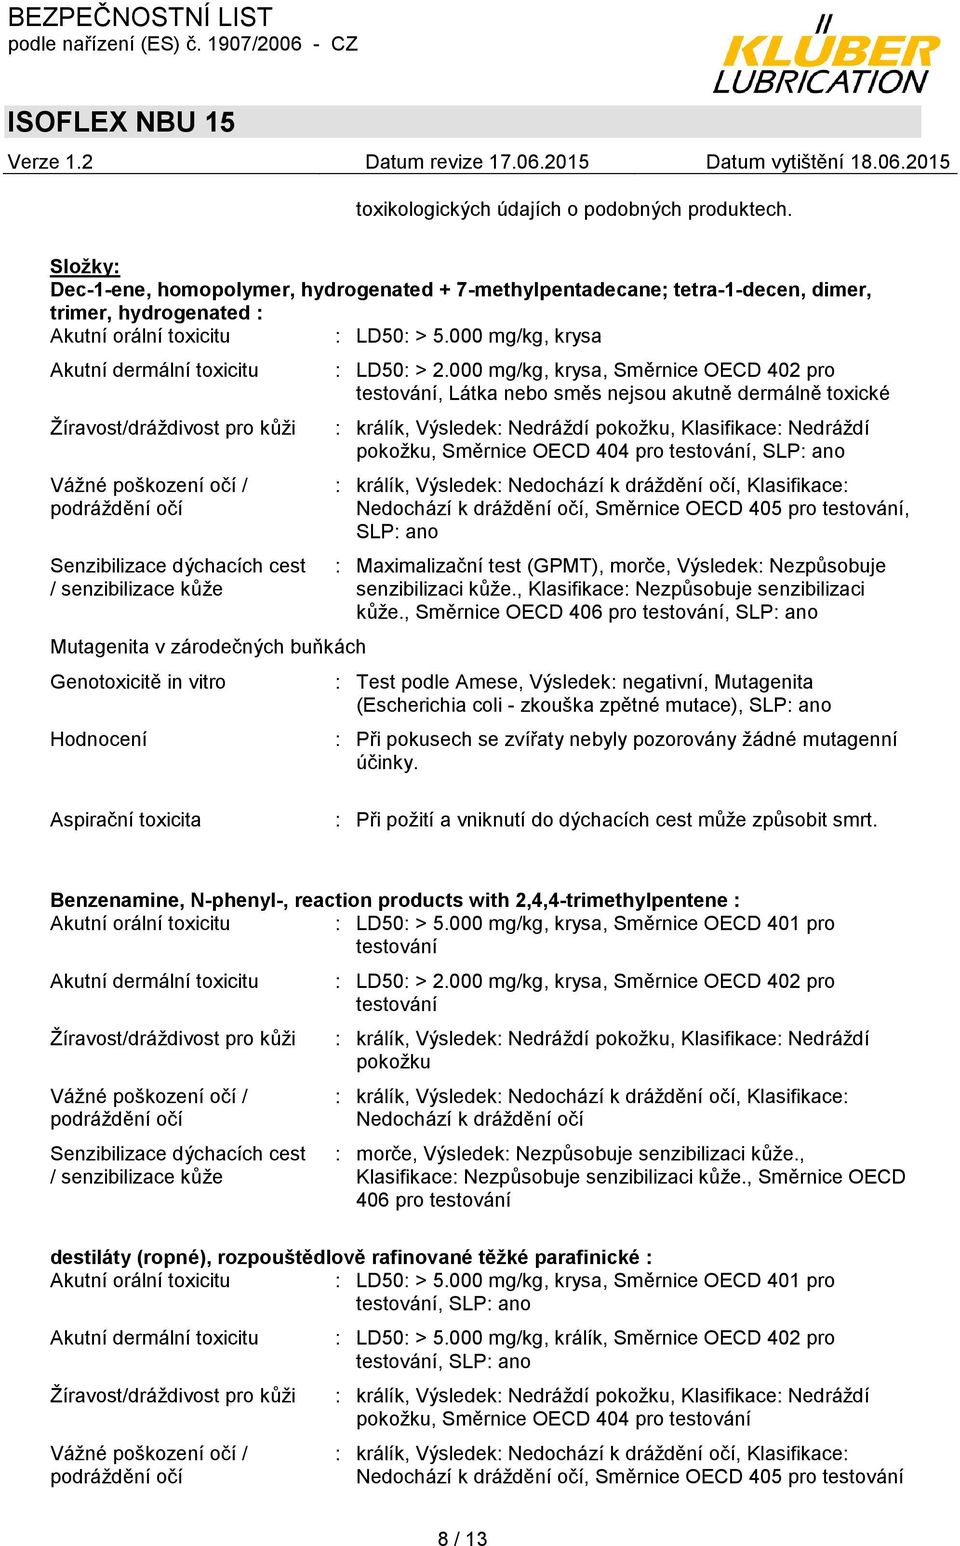 Genotoxicitě in vitro Hodnocení : LD50: > 2.